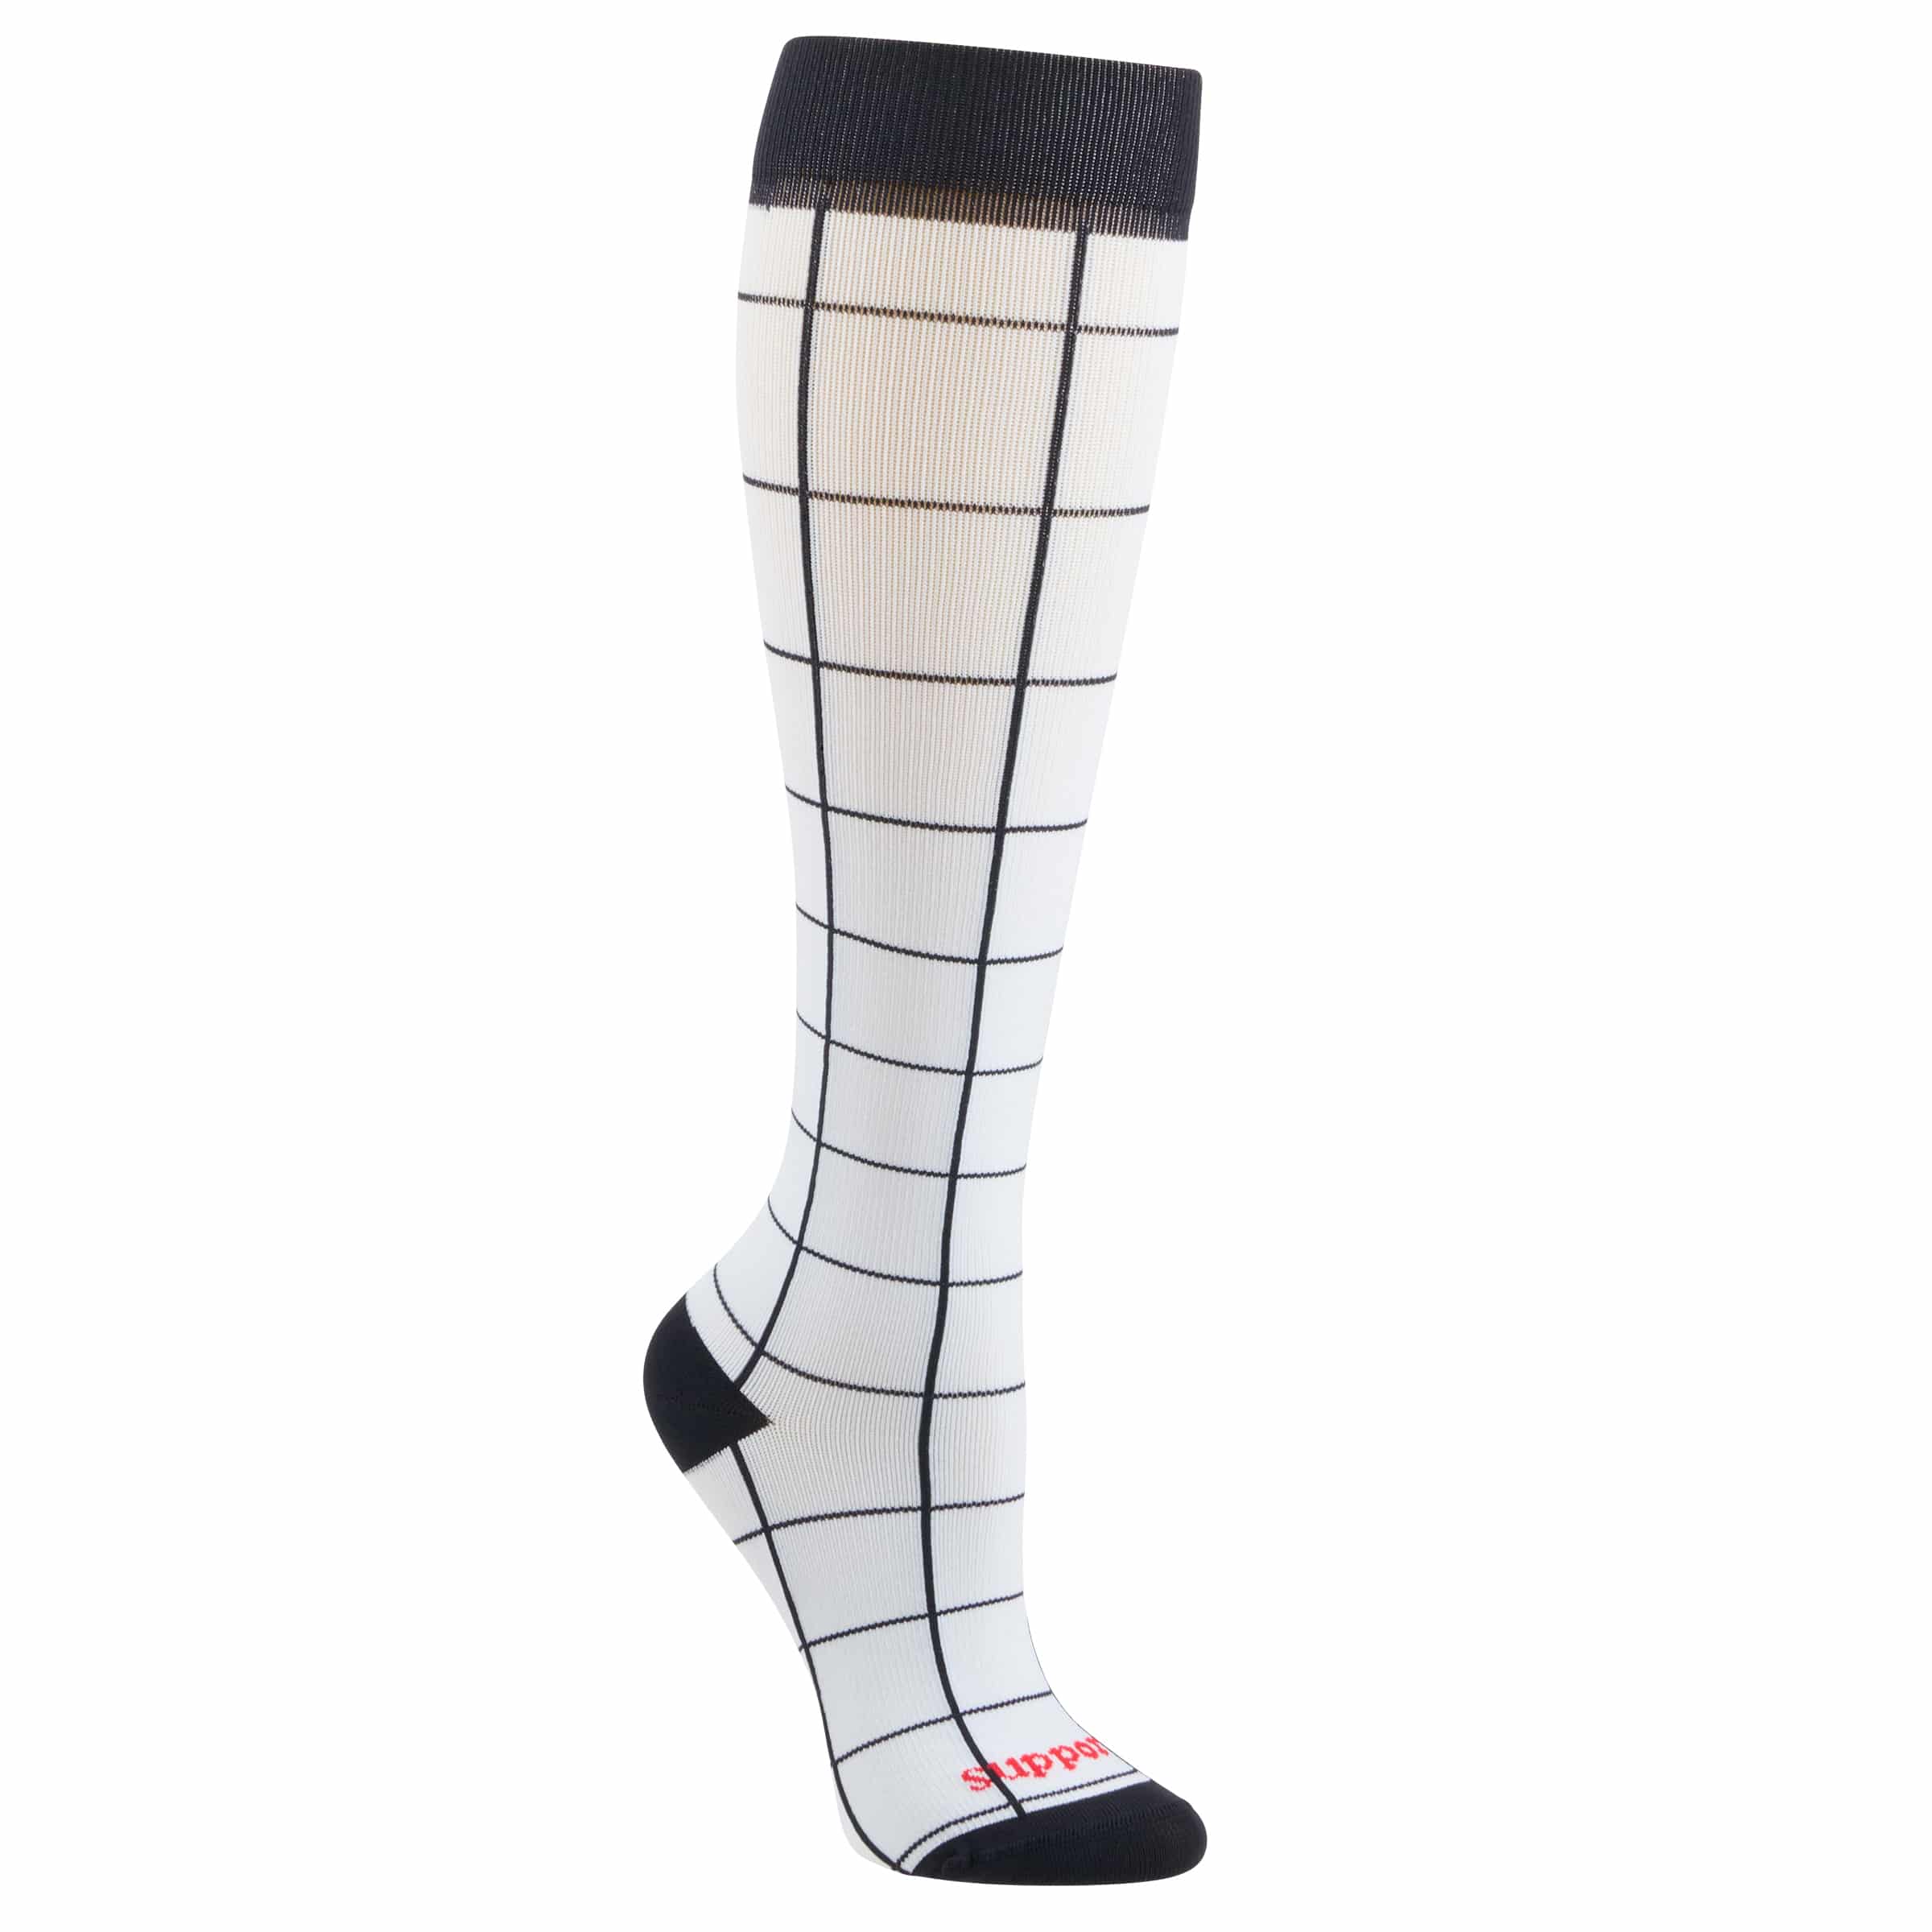 Supporo Unisex Checkered Compression Socks